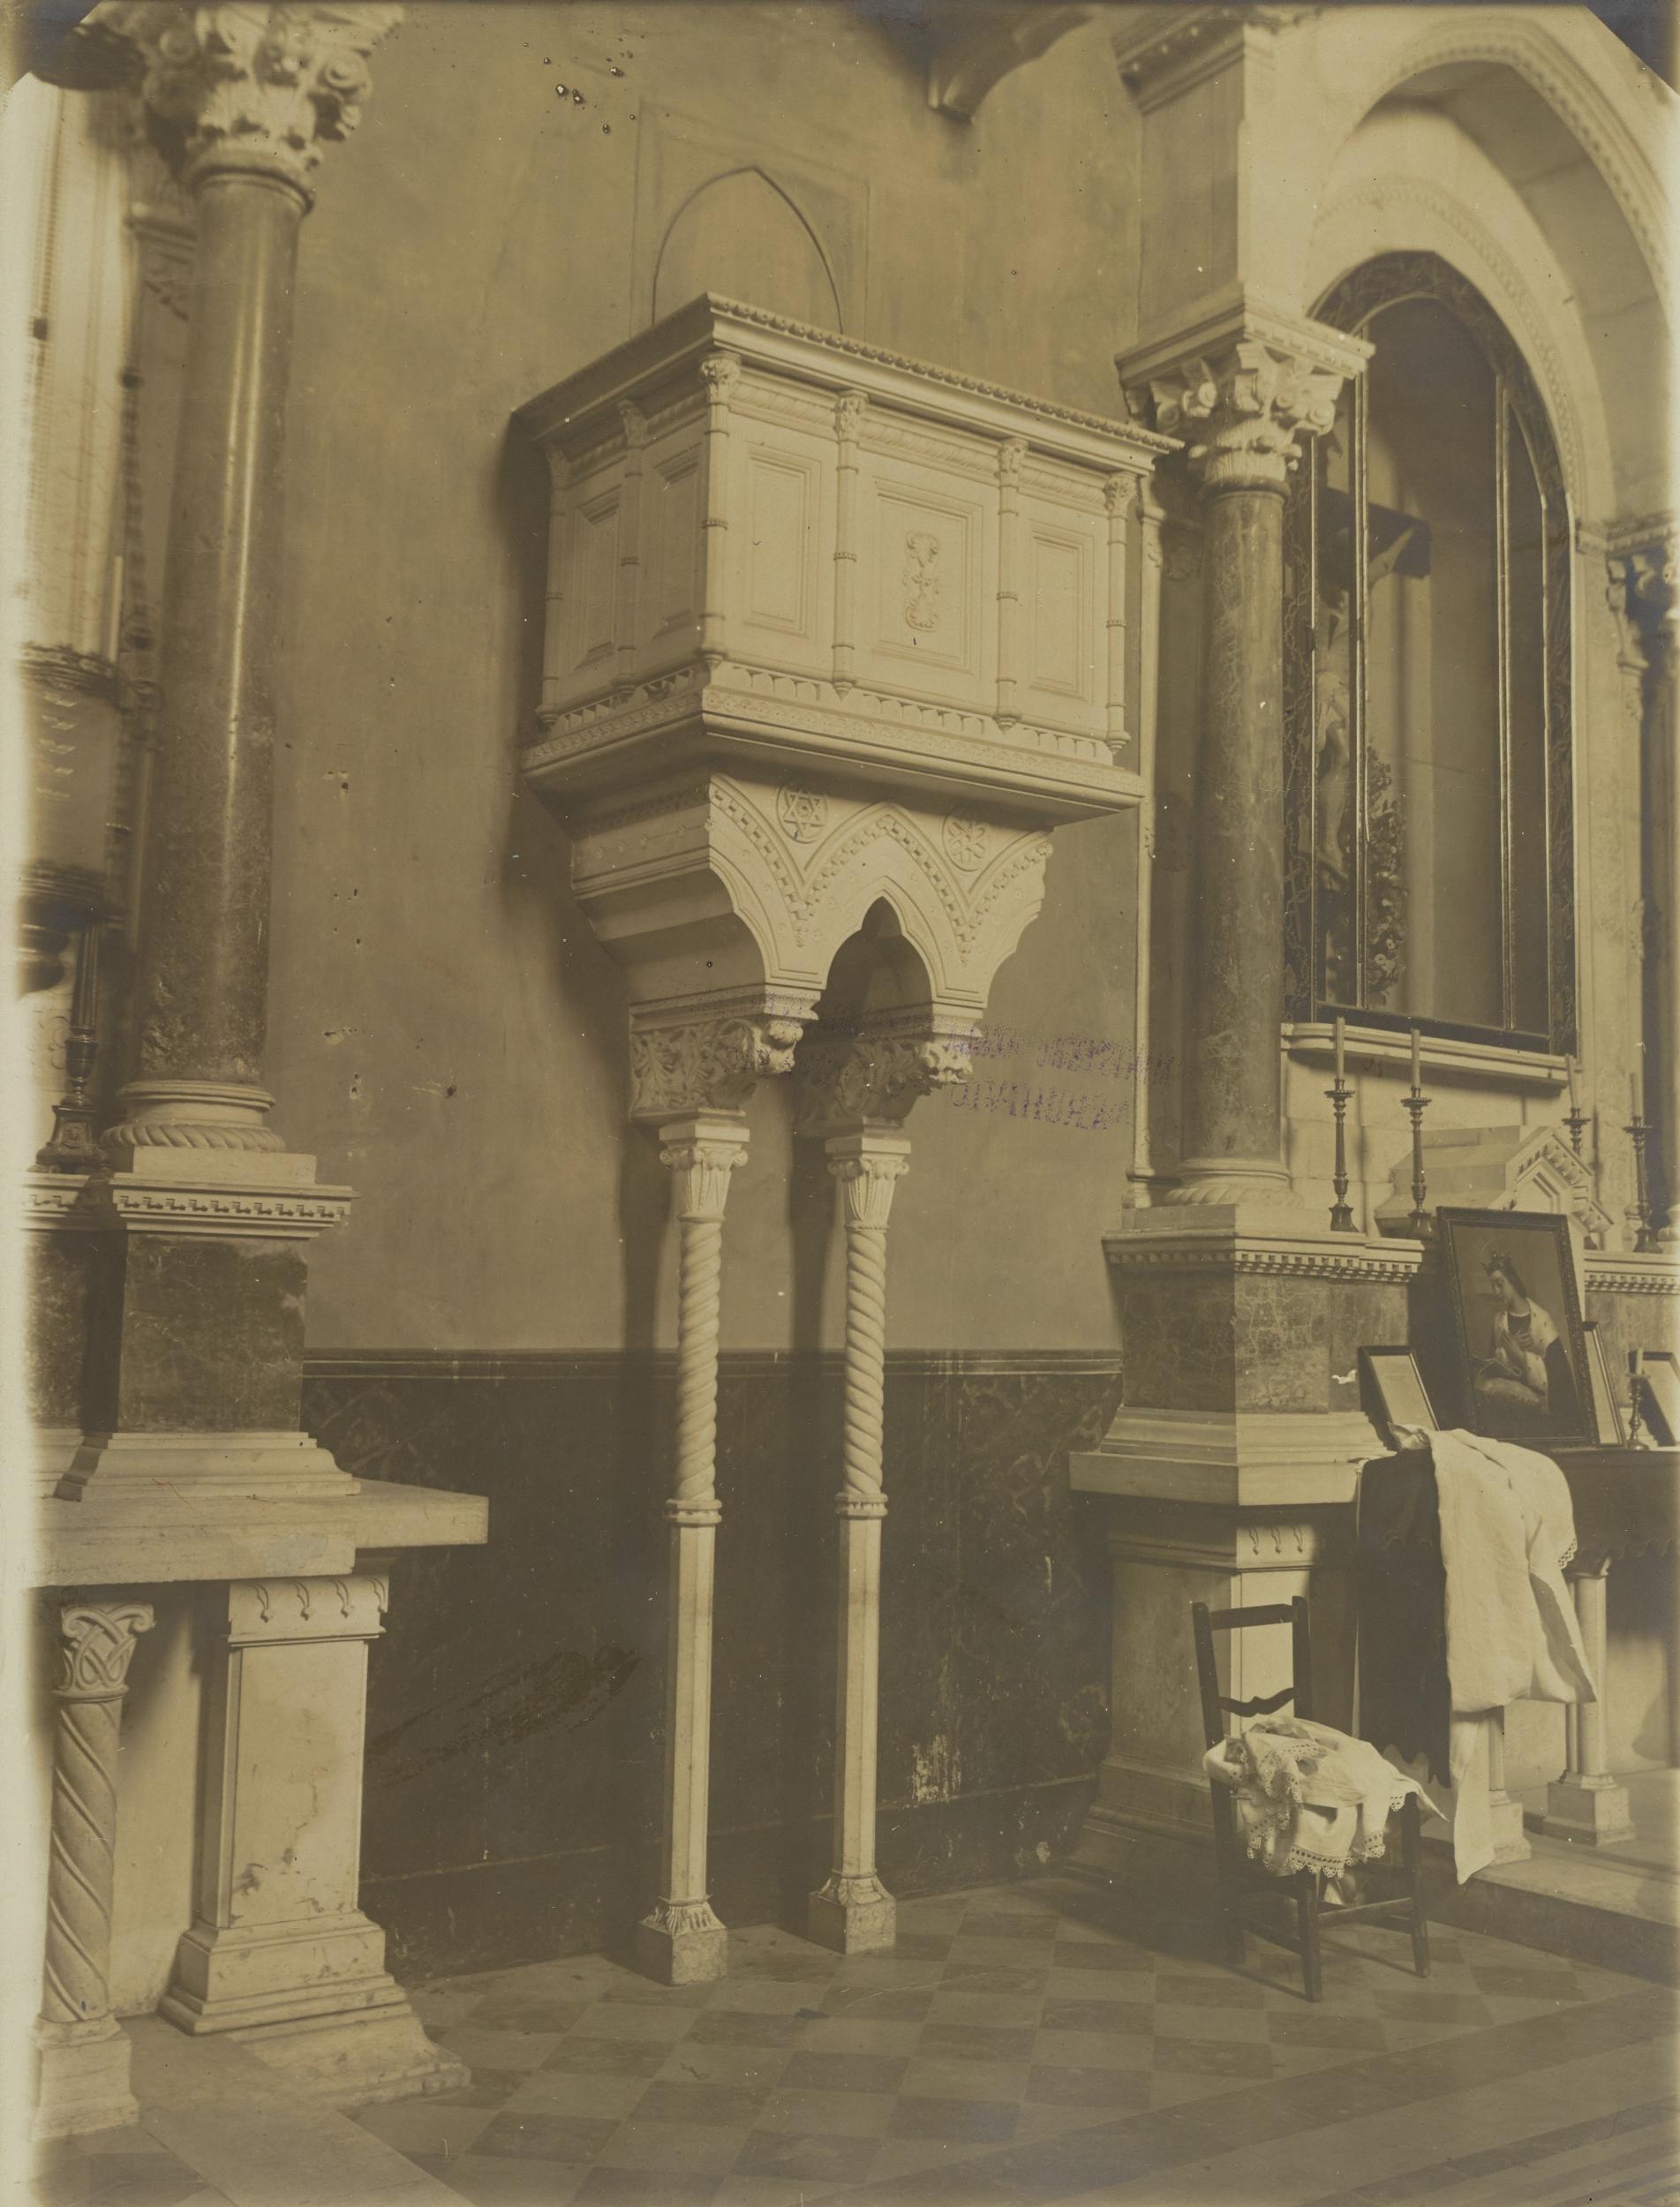 Fotografo non identificato, Bitonto - Chiesa di S. Leo, pulpito, 1891-1900, gelatina ai sali d'argento/carta, MPI137906